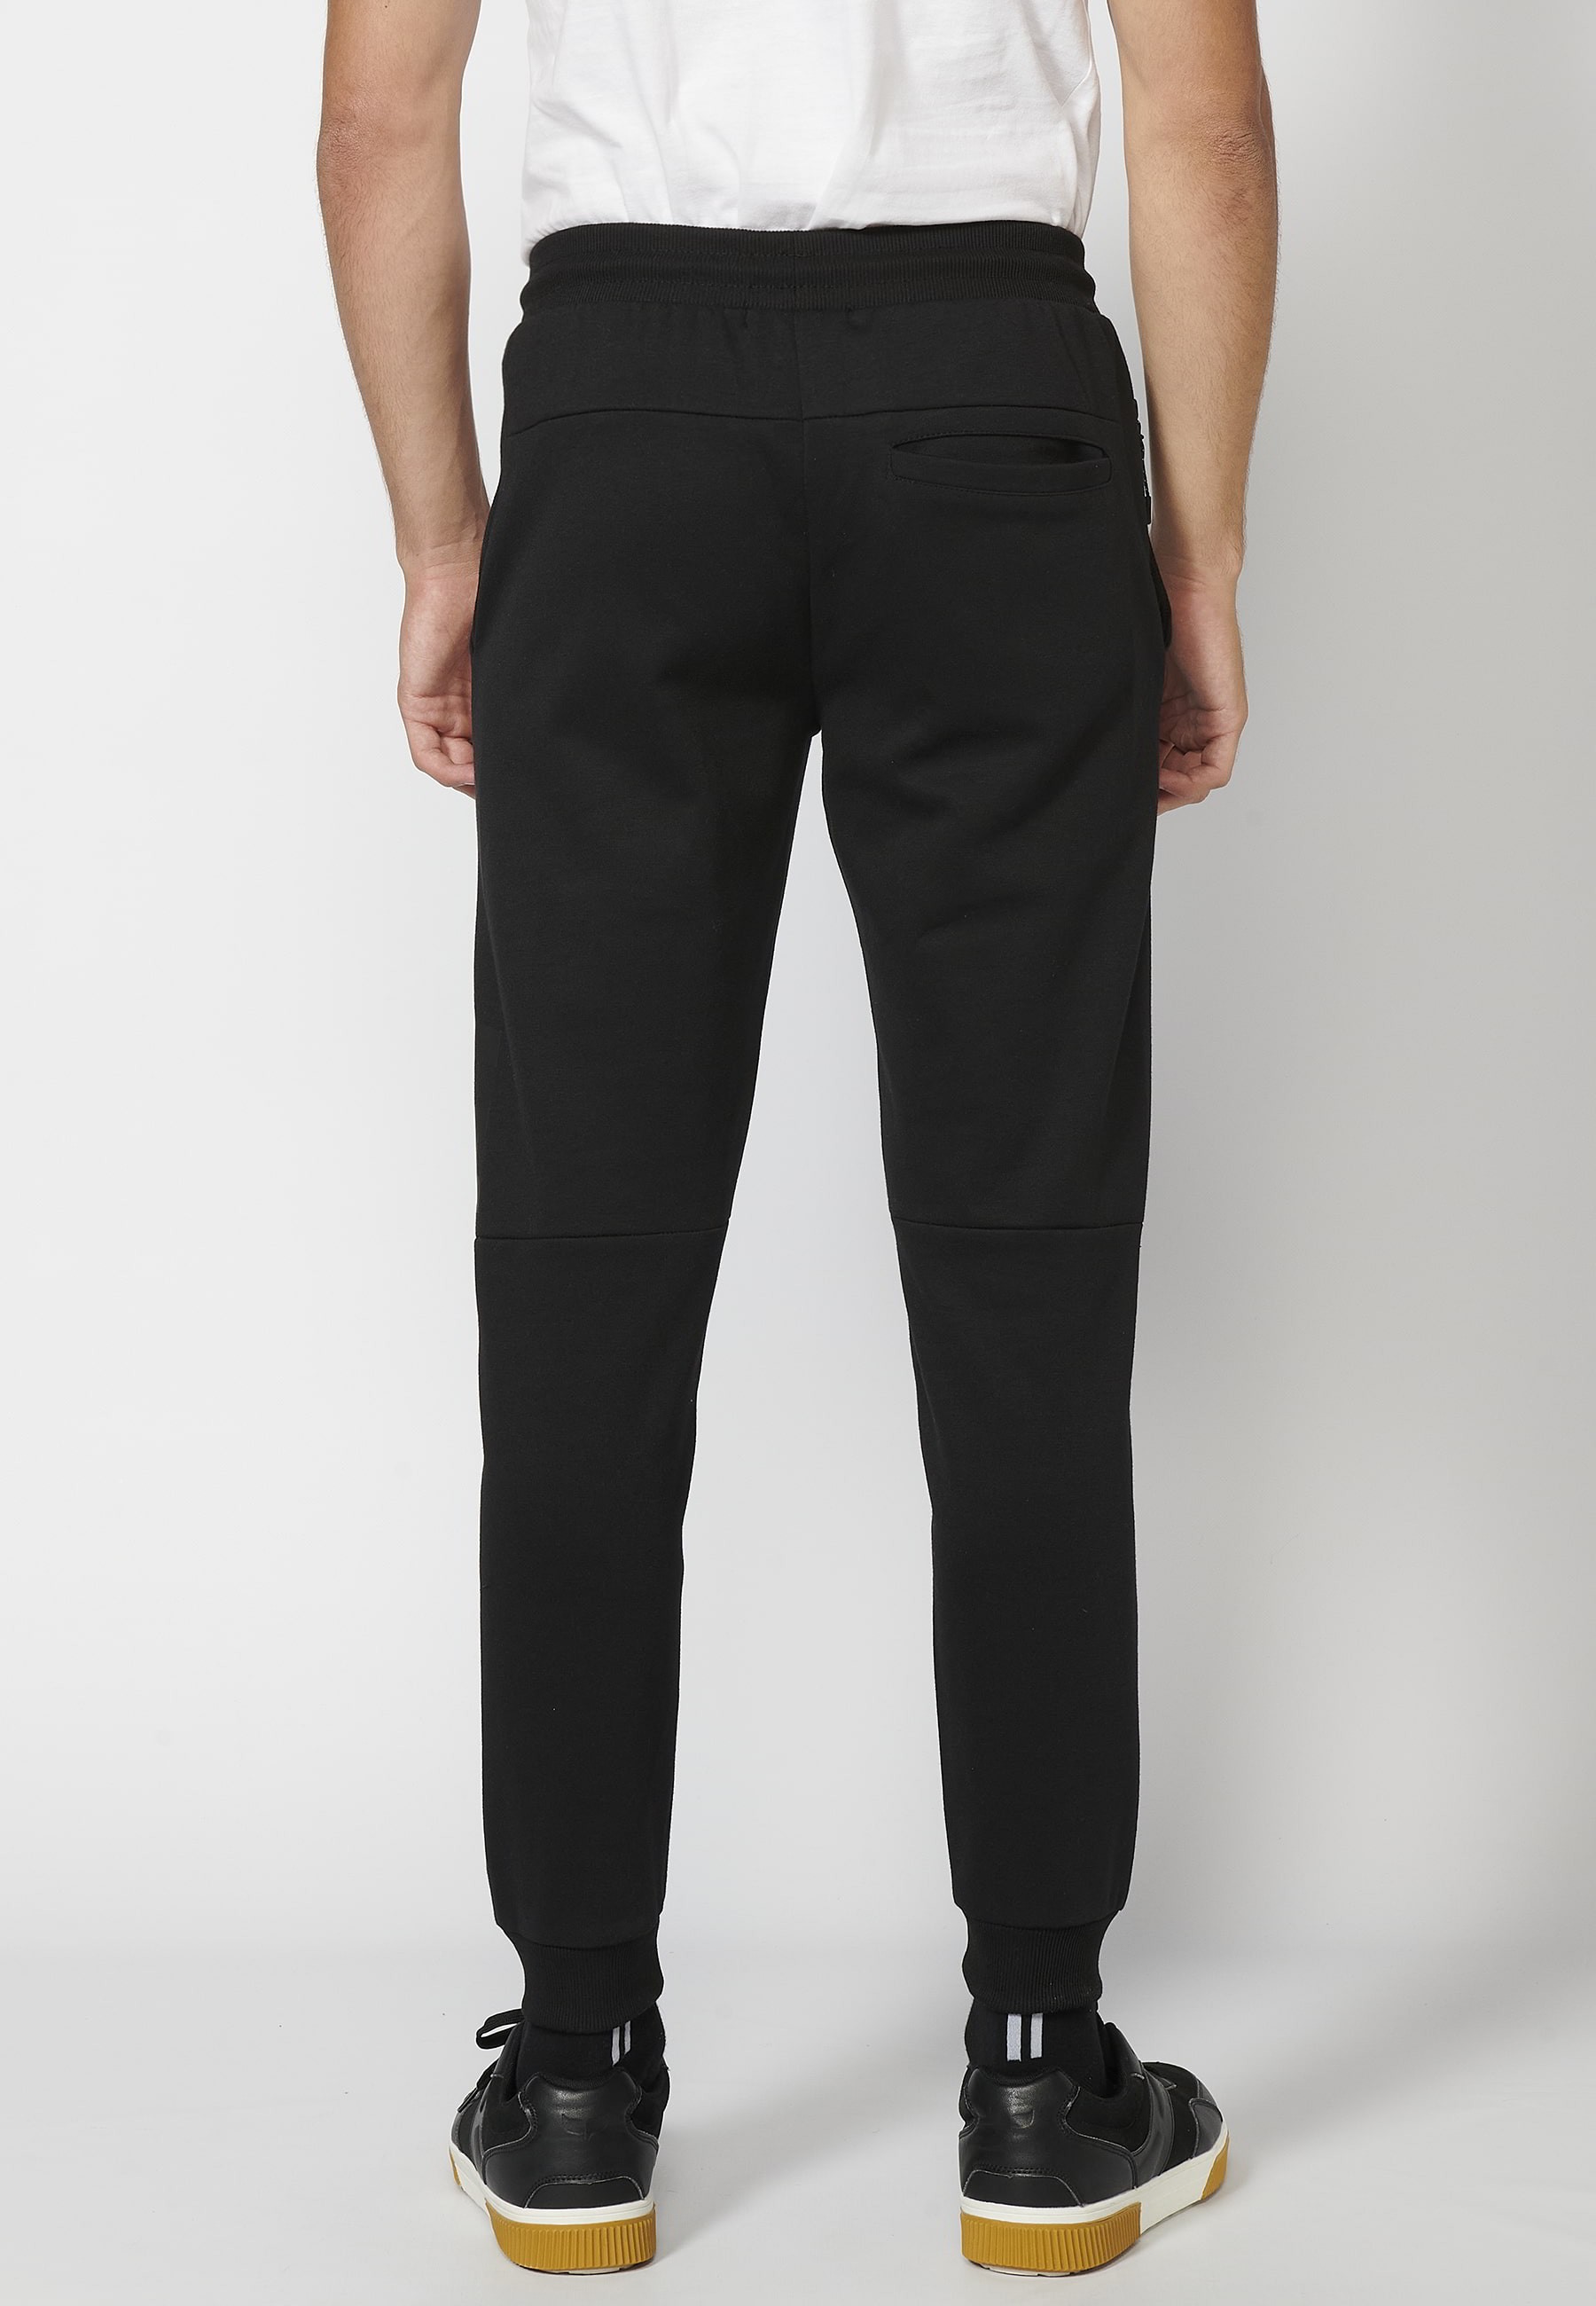 Pantalon de jogging long avec taille élastique réglable, détail de poche,  couleur Noir pour Homme